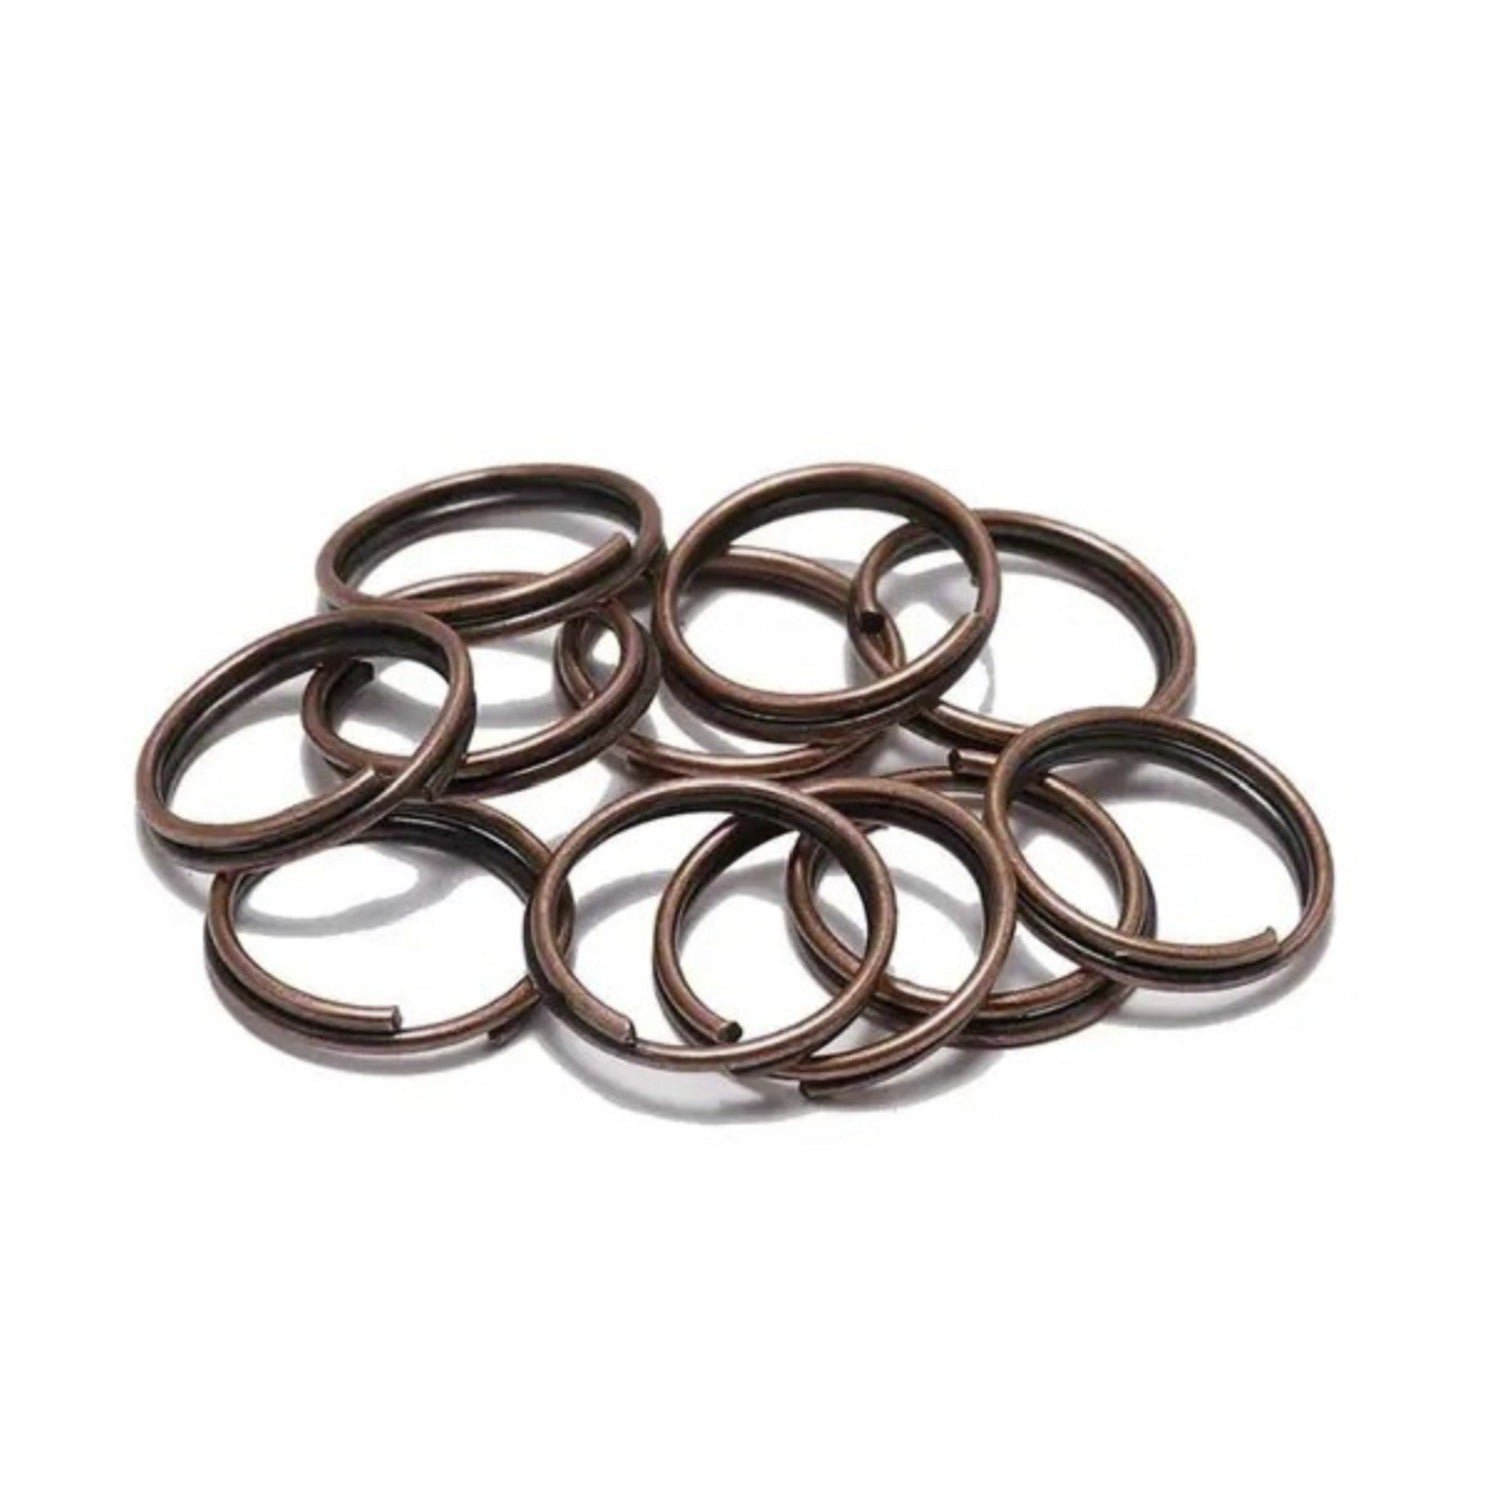 Split Key Rings Double Loop Jump Rings 14mm 16mm 20mm Copper Colour Keyrings